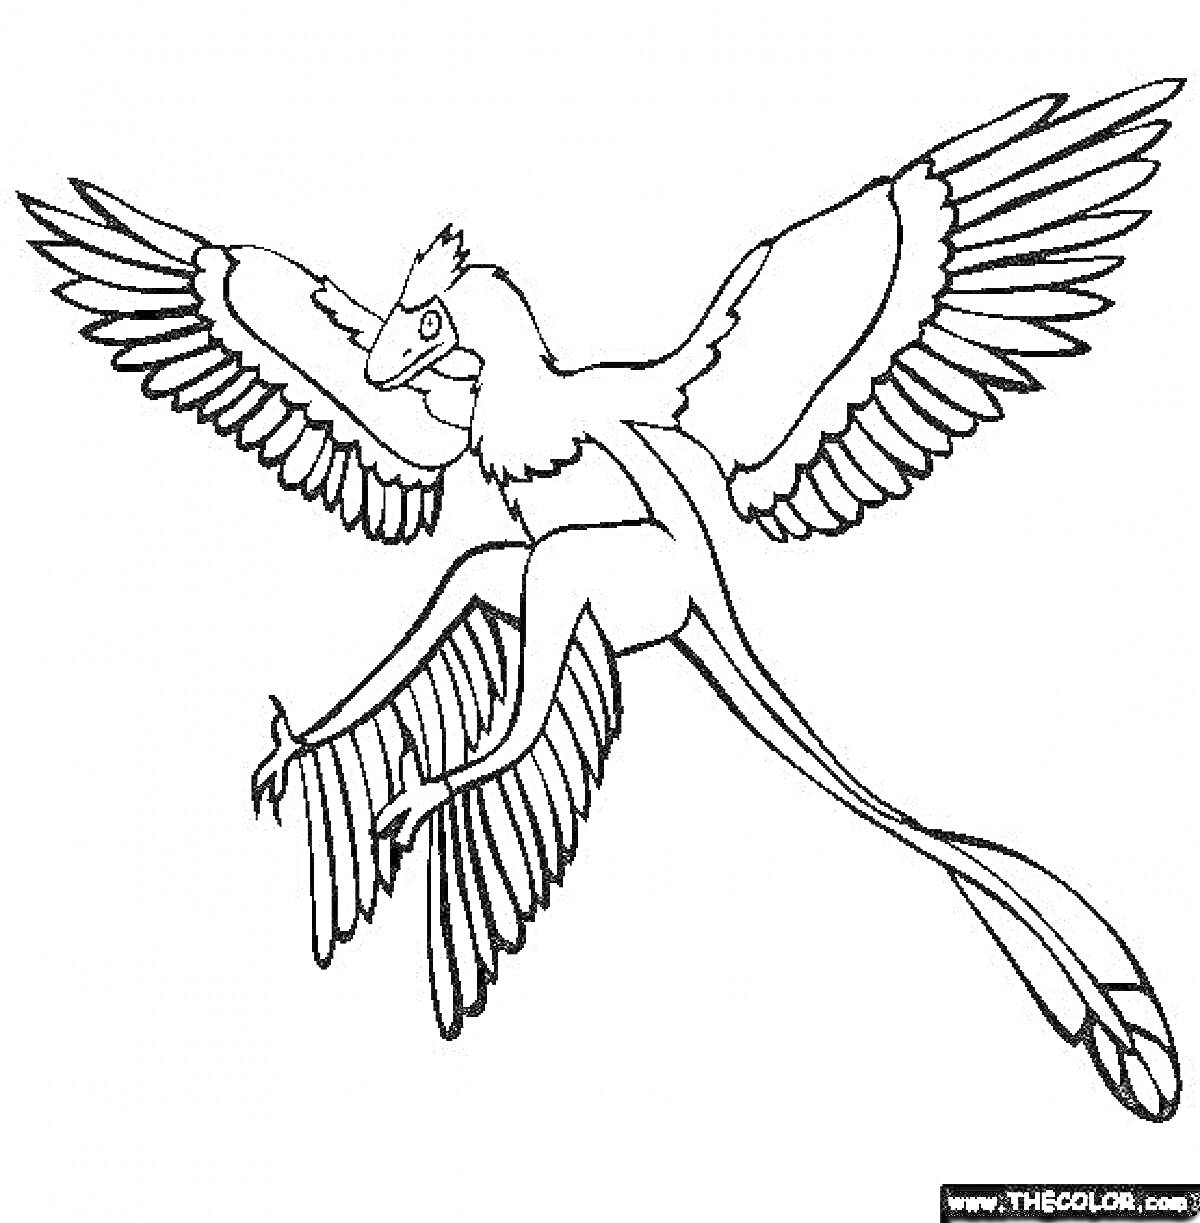 Летящий археоптерикс с расправленными крыльями и длинным хвостом